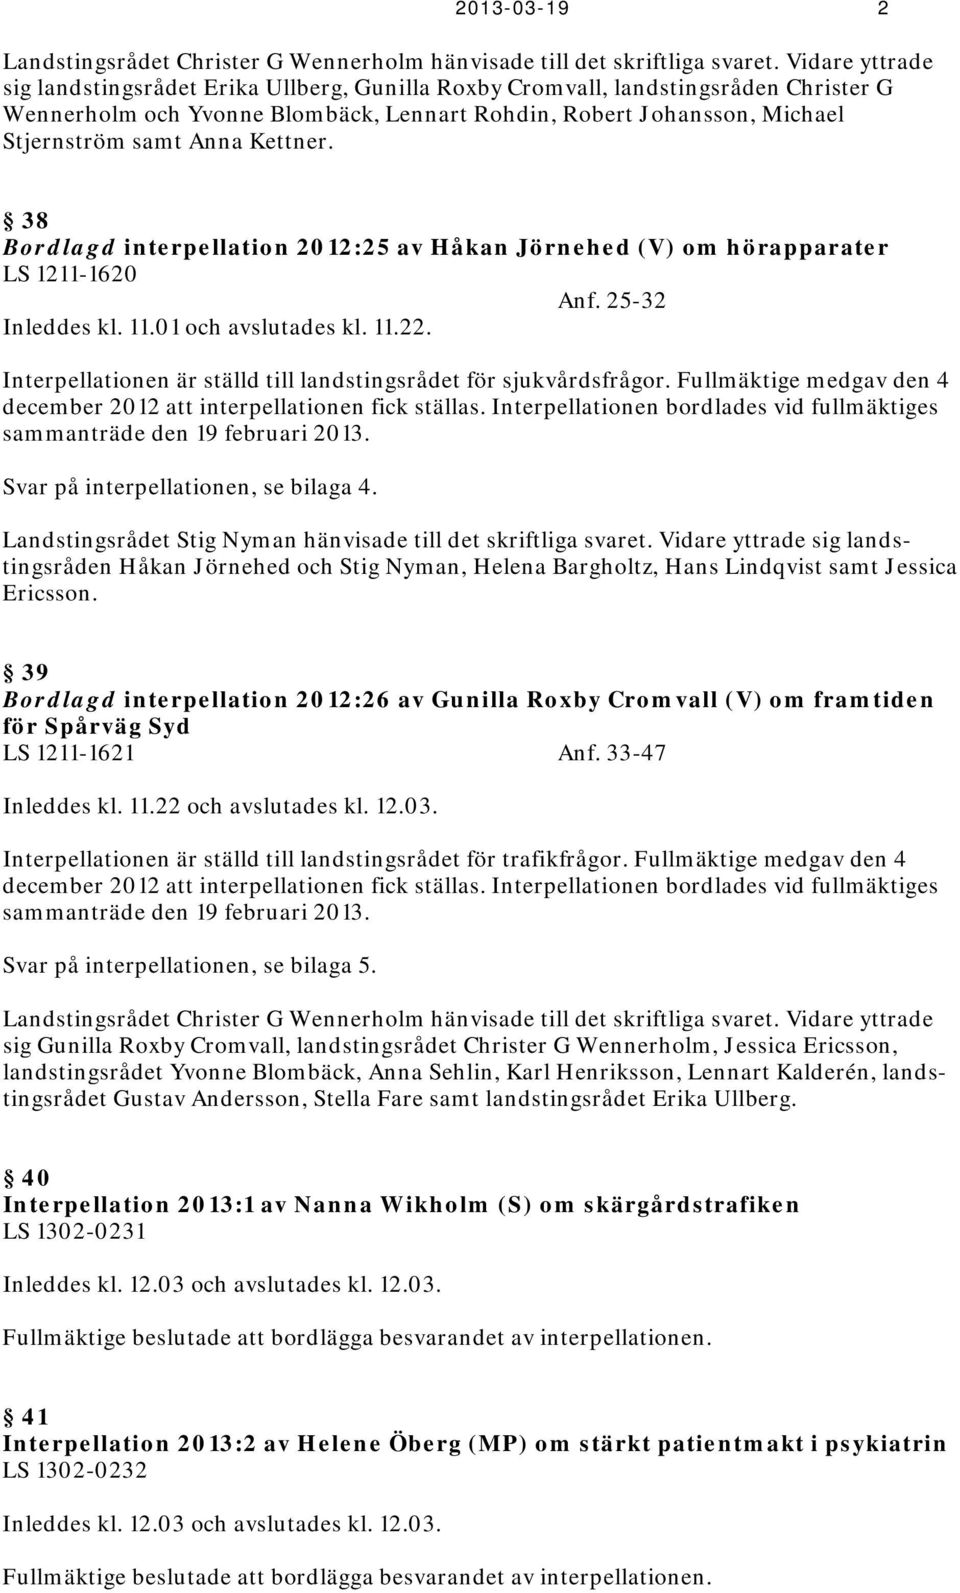 Kettner. 38 Bordlagd interpellation 2012:25 av Håkan Jörnehed (V) om hörapparater LS 1211-1620 Anf. 25-32 Inleddes kl. 11.01 och avslutades kl. 11.22.